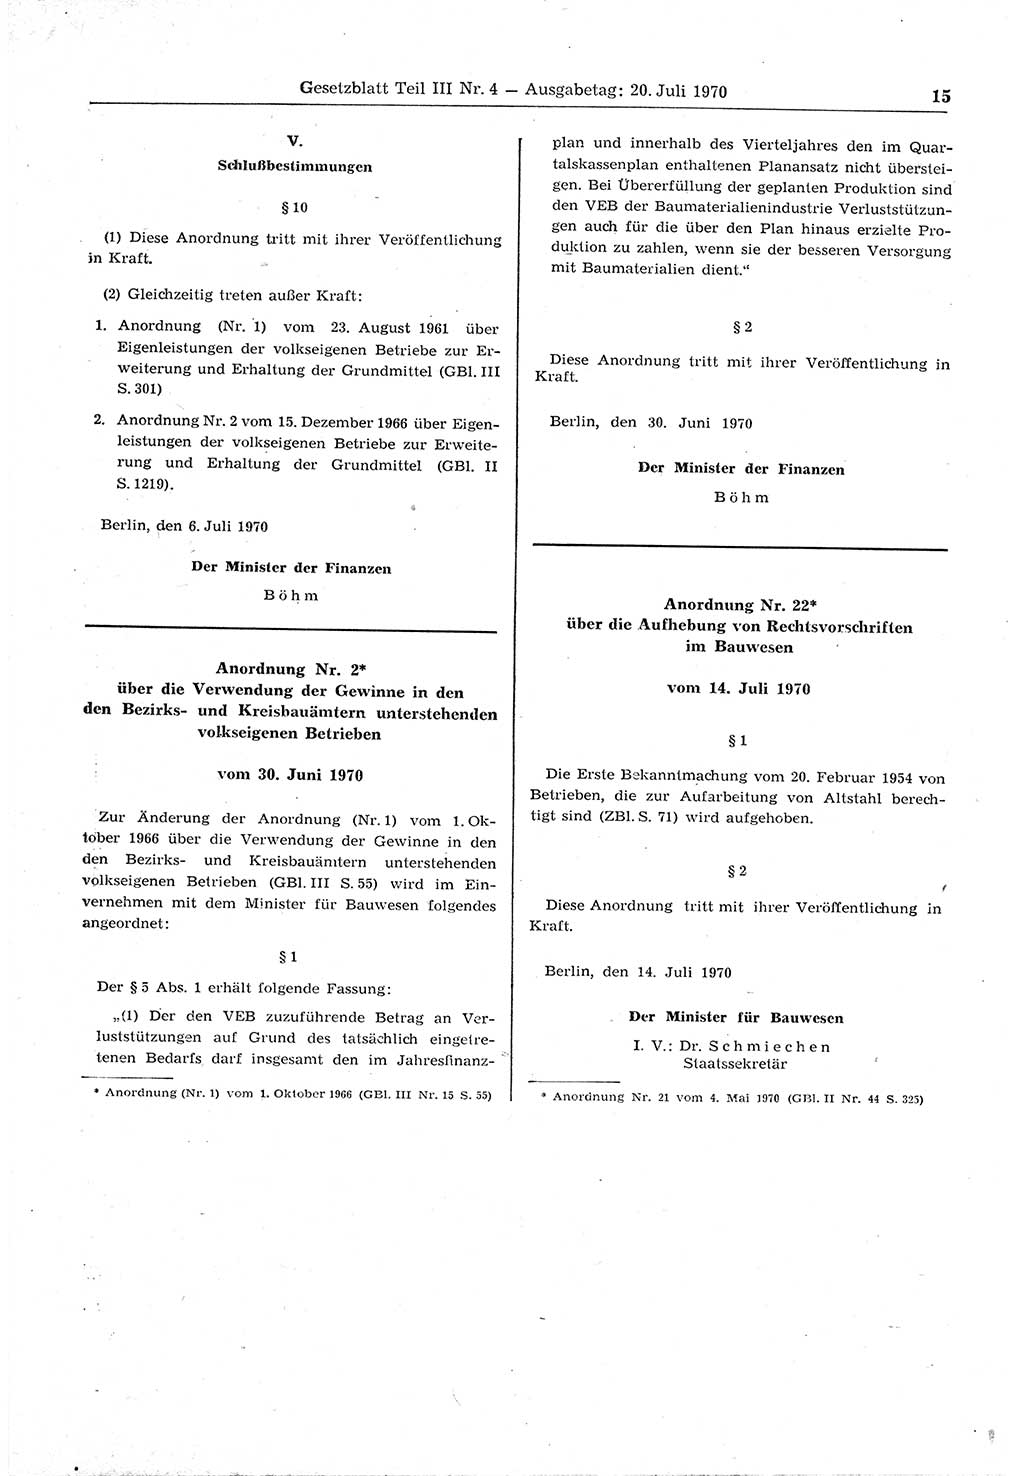 Gesetzblatt (GBl.) der Deutschen Demokratischen Republik (DDR) Teil ⅠⅠⅠ 1970, Seite 15 (GBl. DDR ⅠⅠⅠ 1970, S. 15)